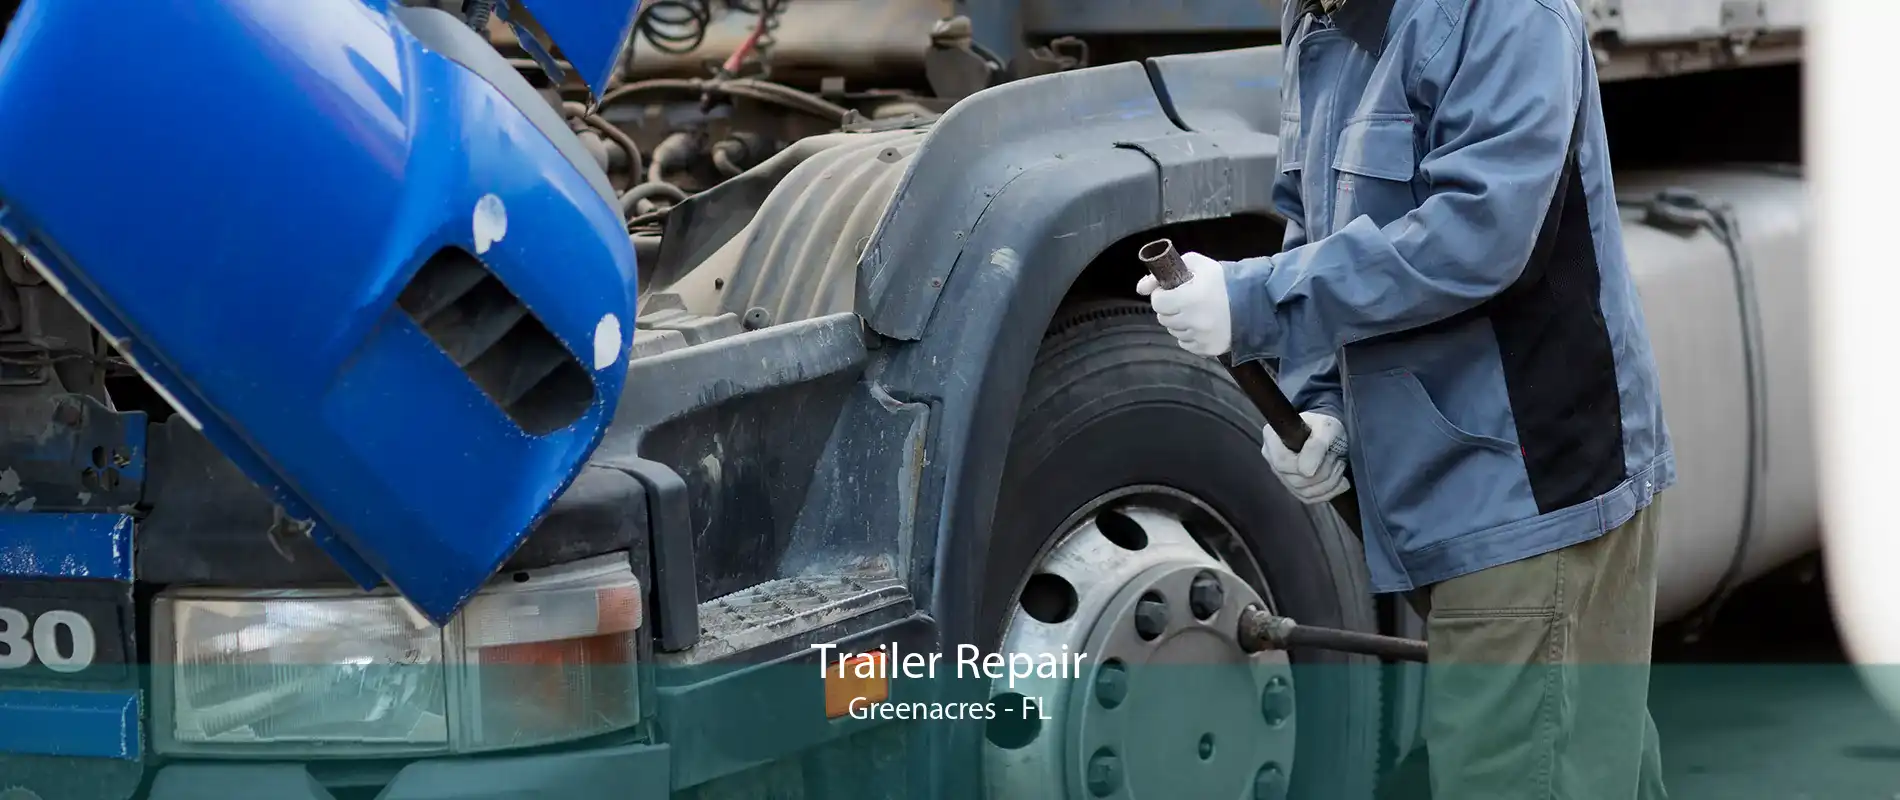 Trailer Repair Greenacres - FL